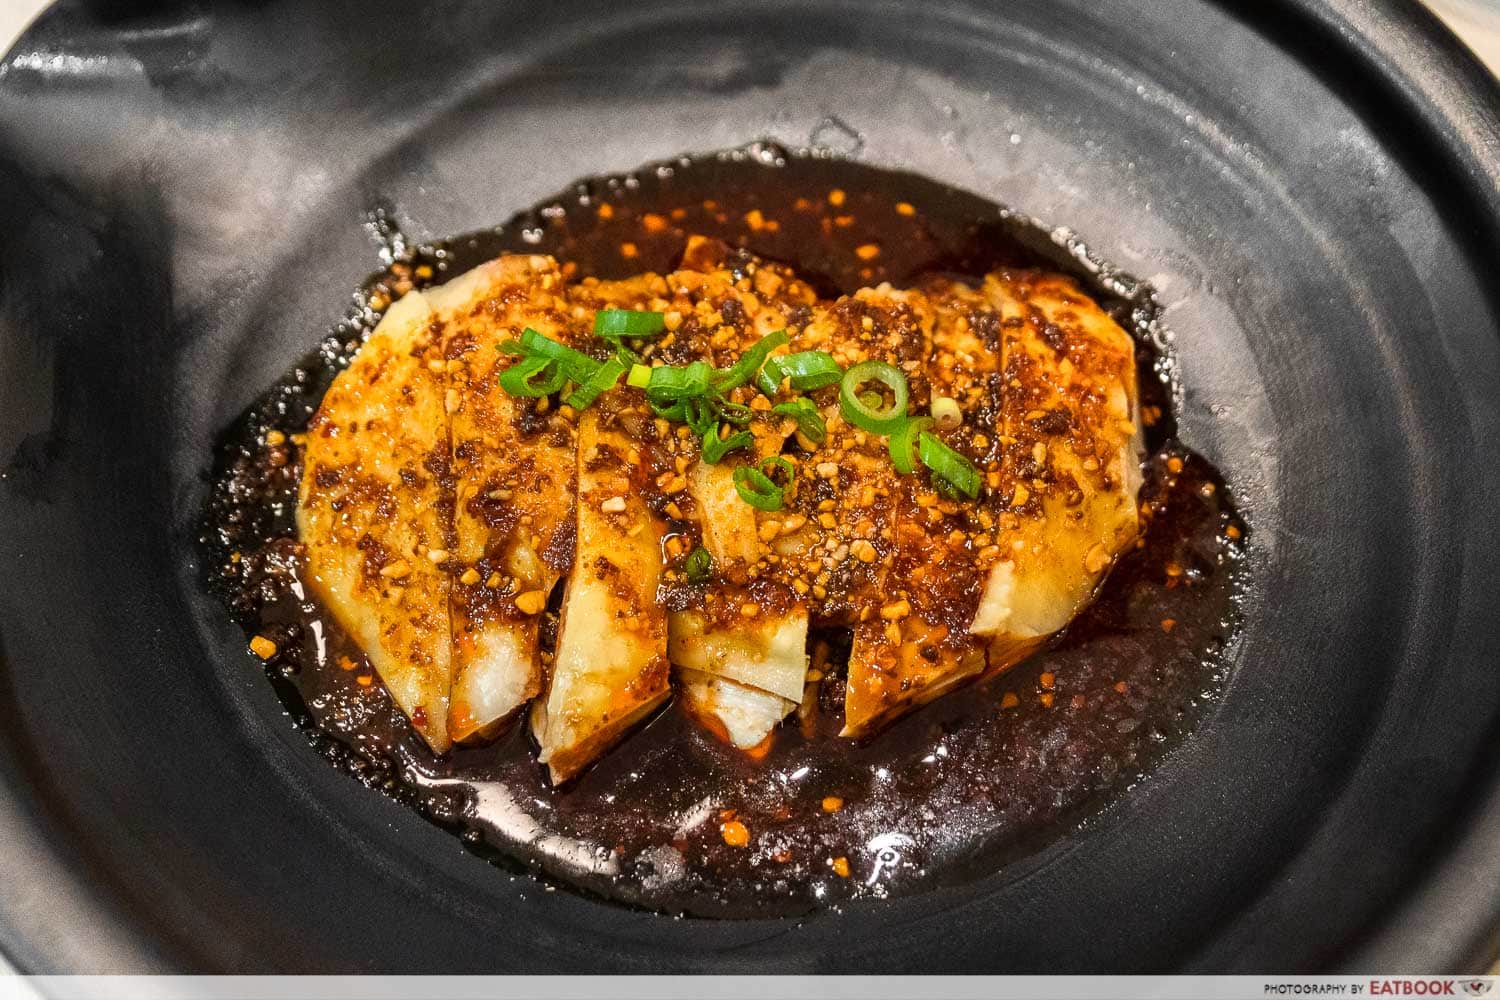 spicy chicken sichuan style intro